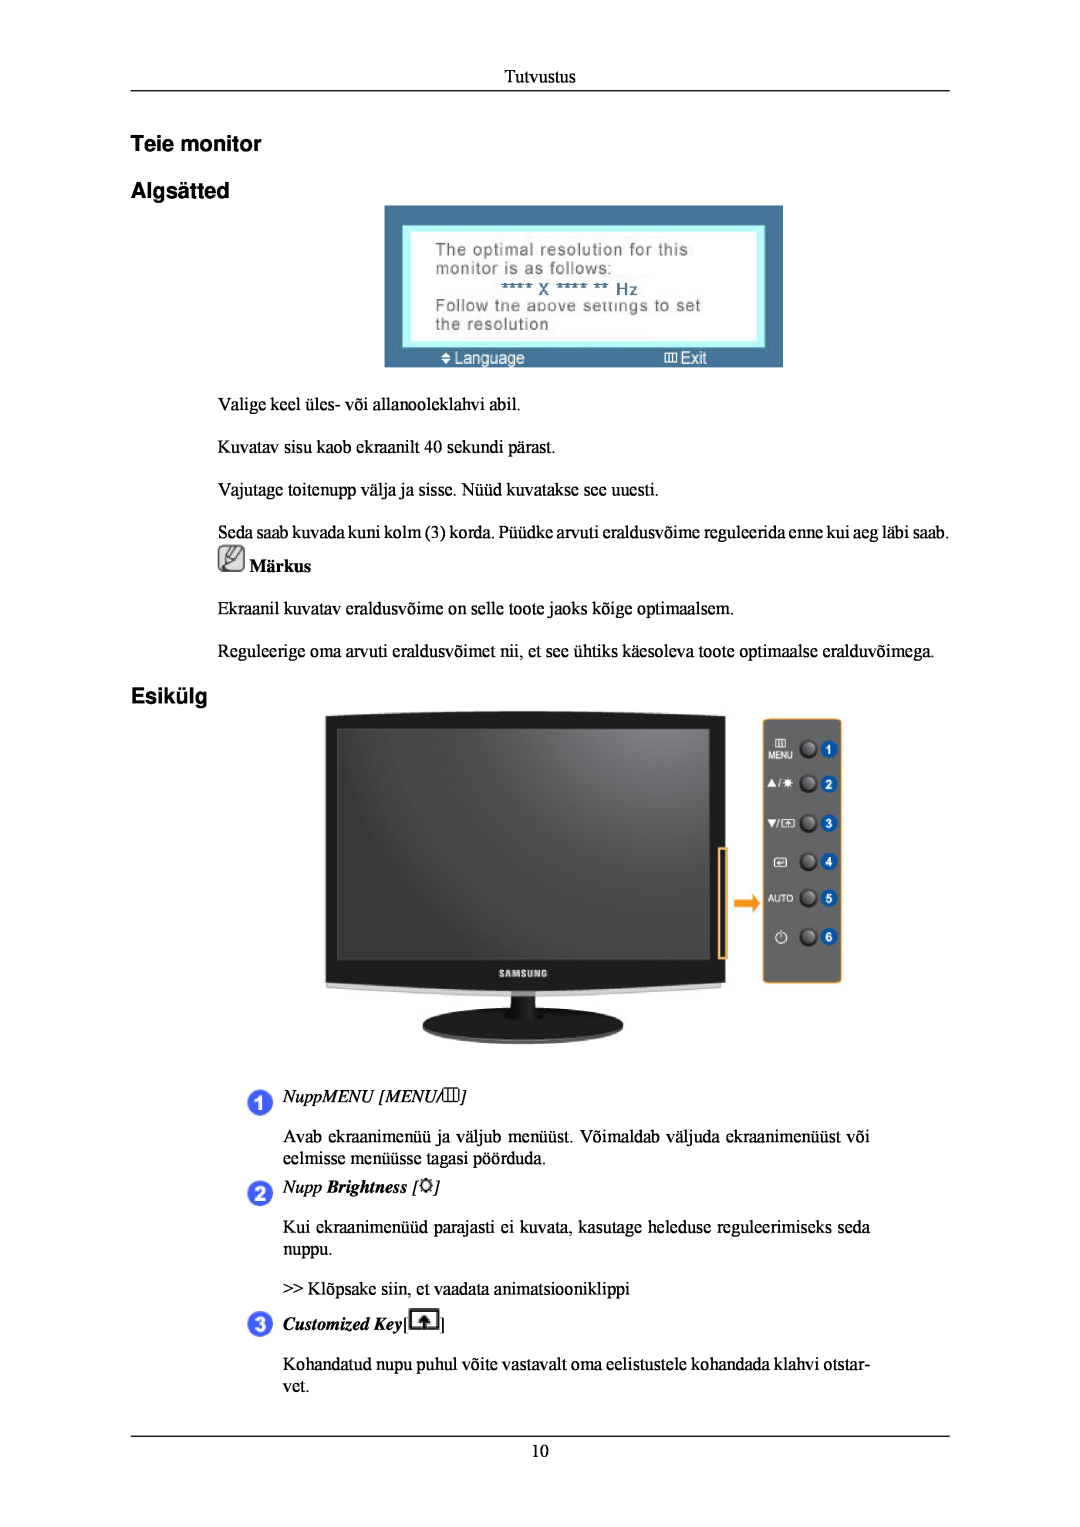 Samsung LS24CMKKFV/EN manual Teie monitor Algsätted, Esikülg, NuppMENU MENU, Nupp Brightness 